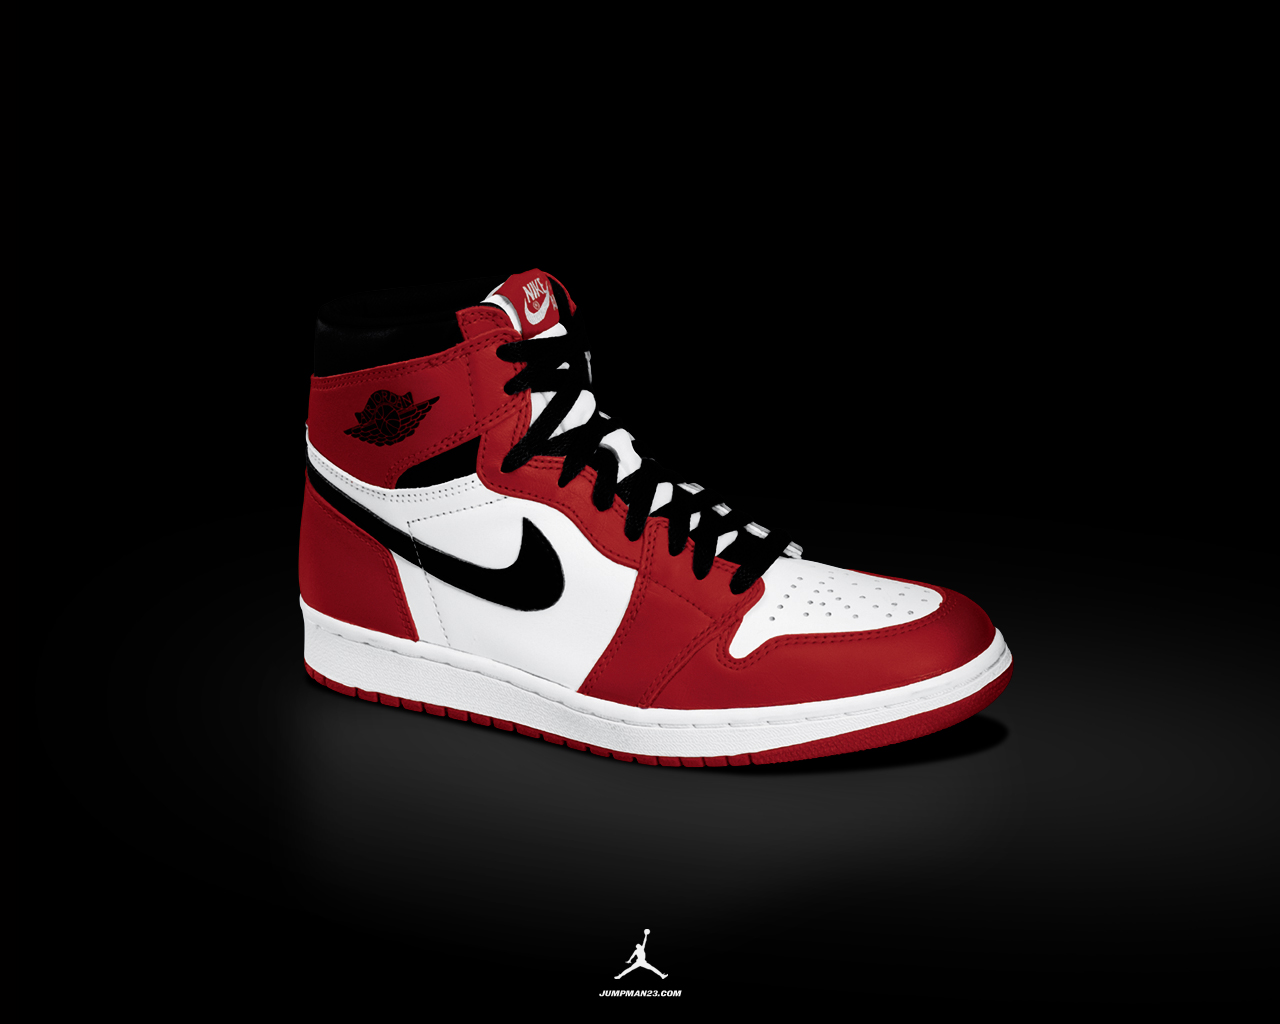 Air Jordan 1 (I) Black Red Wallpaper • KicksOnFire.com